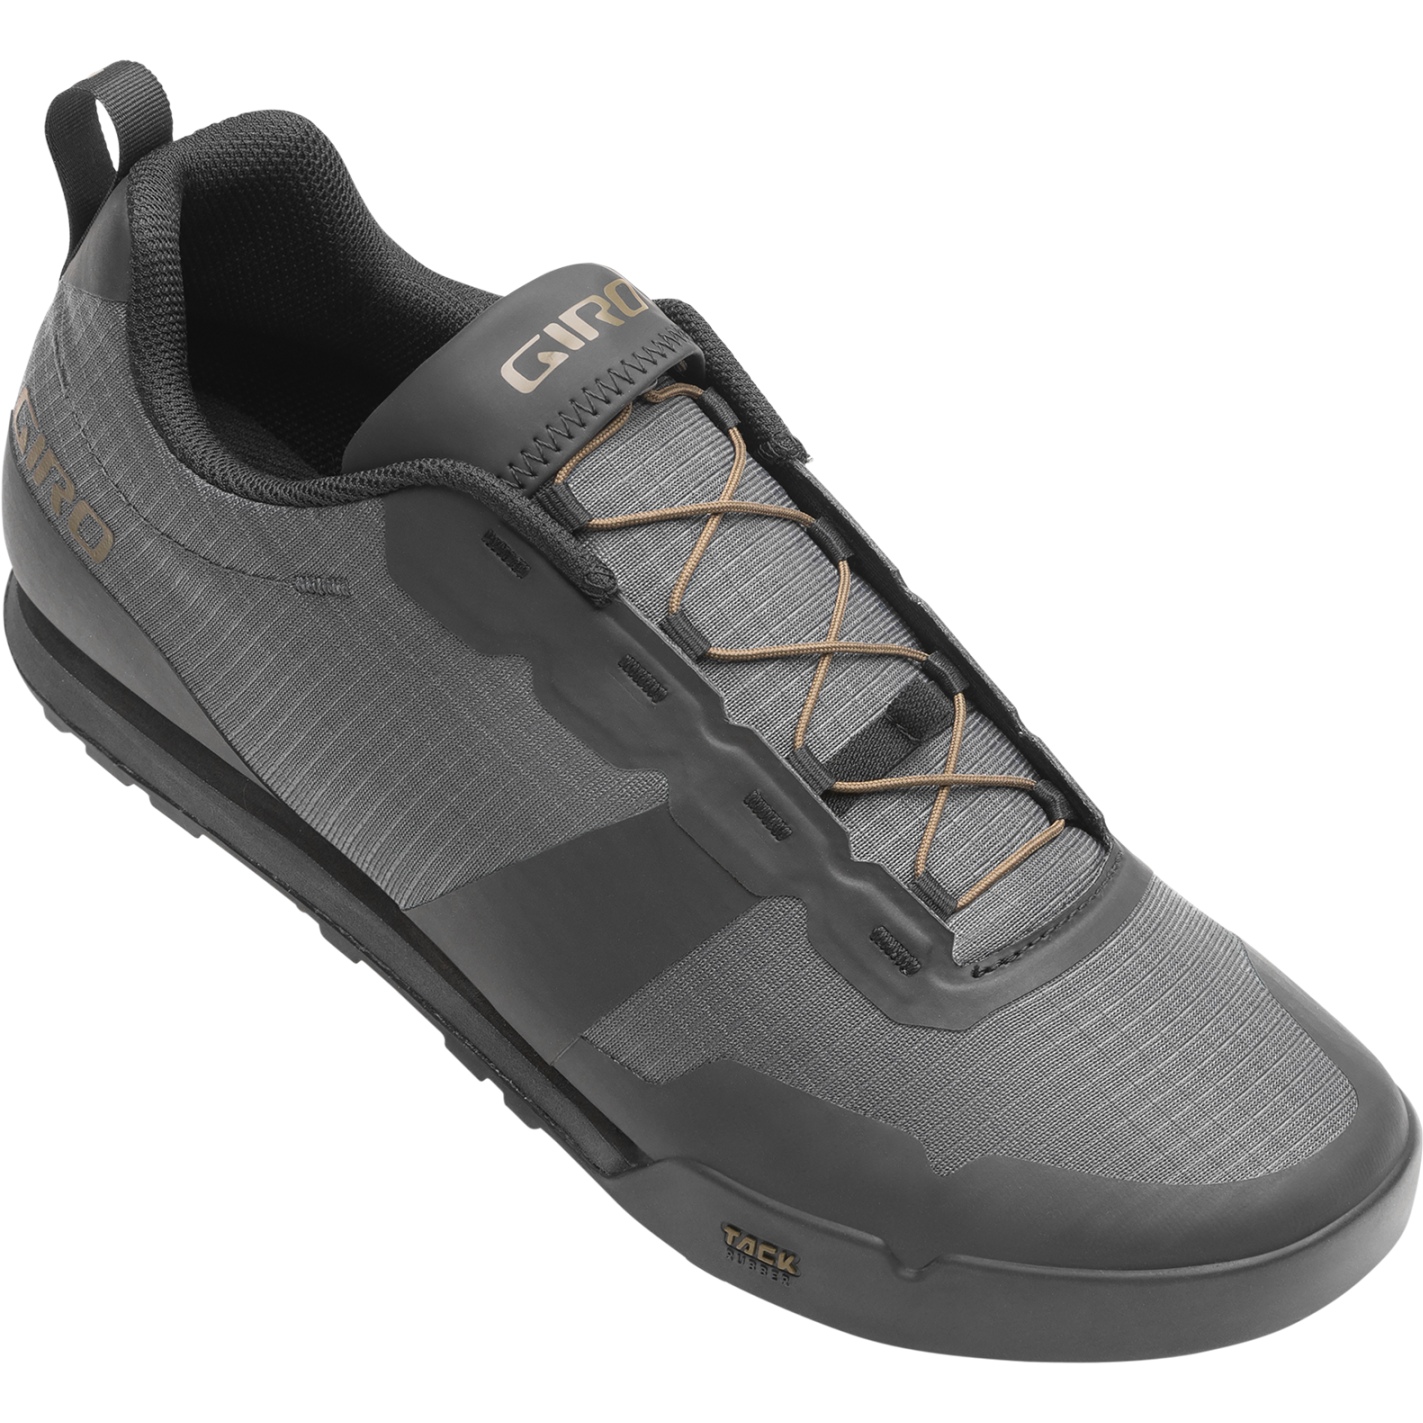 Produktbild von Giro Tracker Fastlace Flatpedal Schuhe Herren - dark shadow/trail green